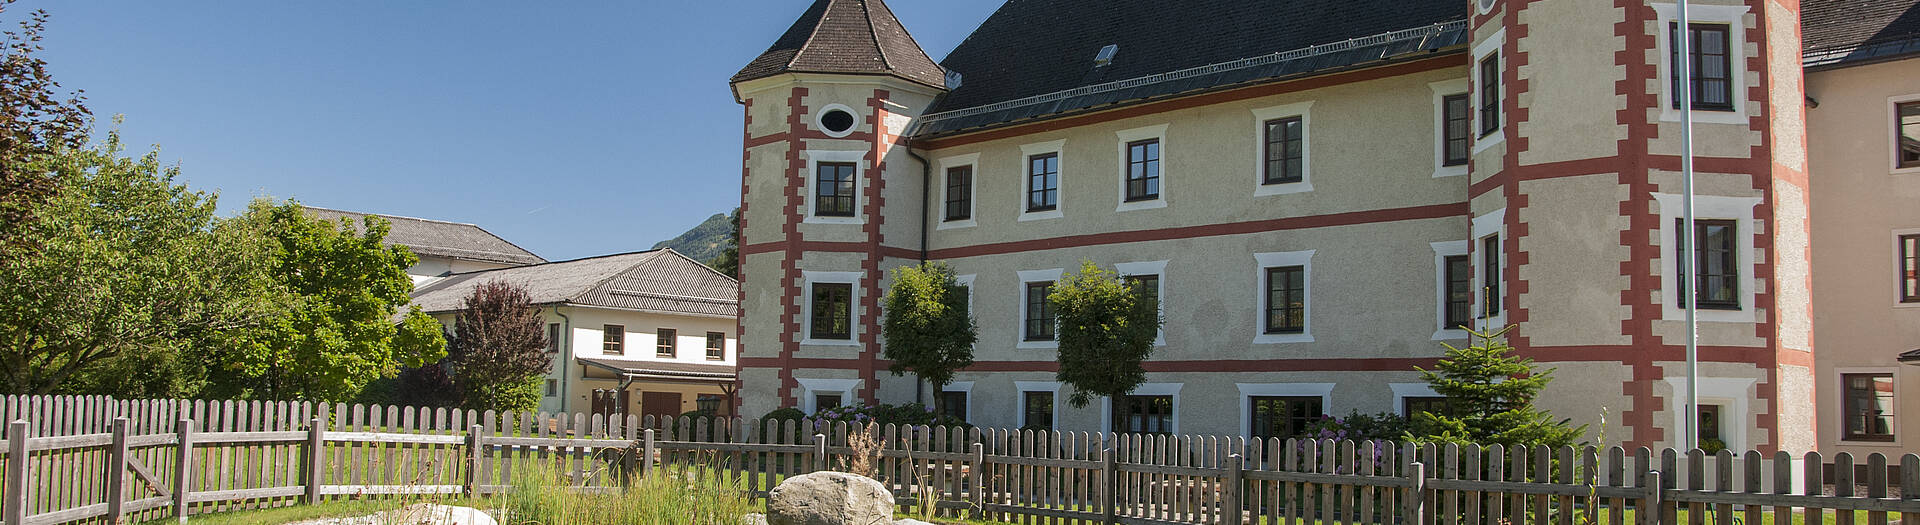 Lurnfeld Mit dem Schloss Drauhofen in der Nationalpark-Region Hohe Tauern